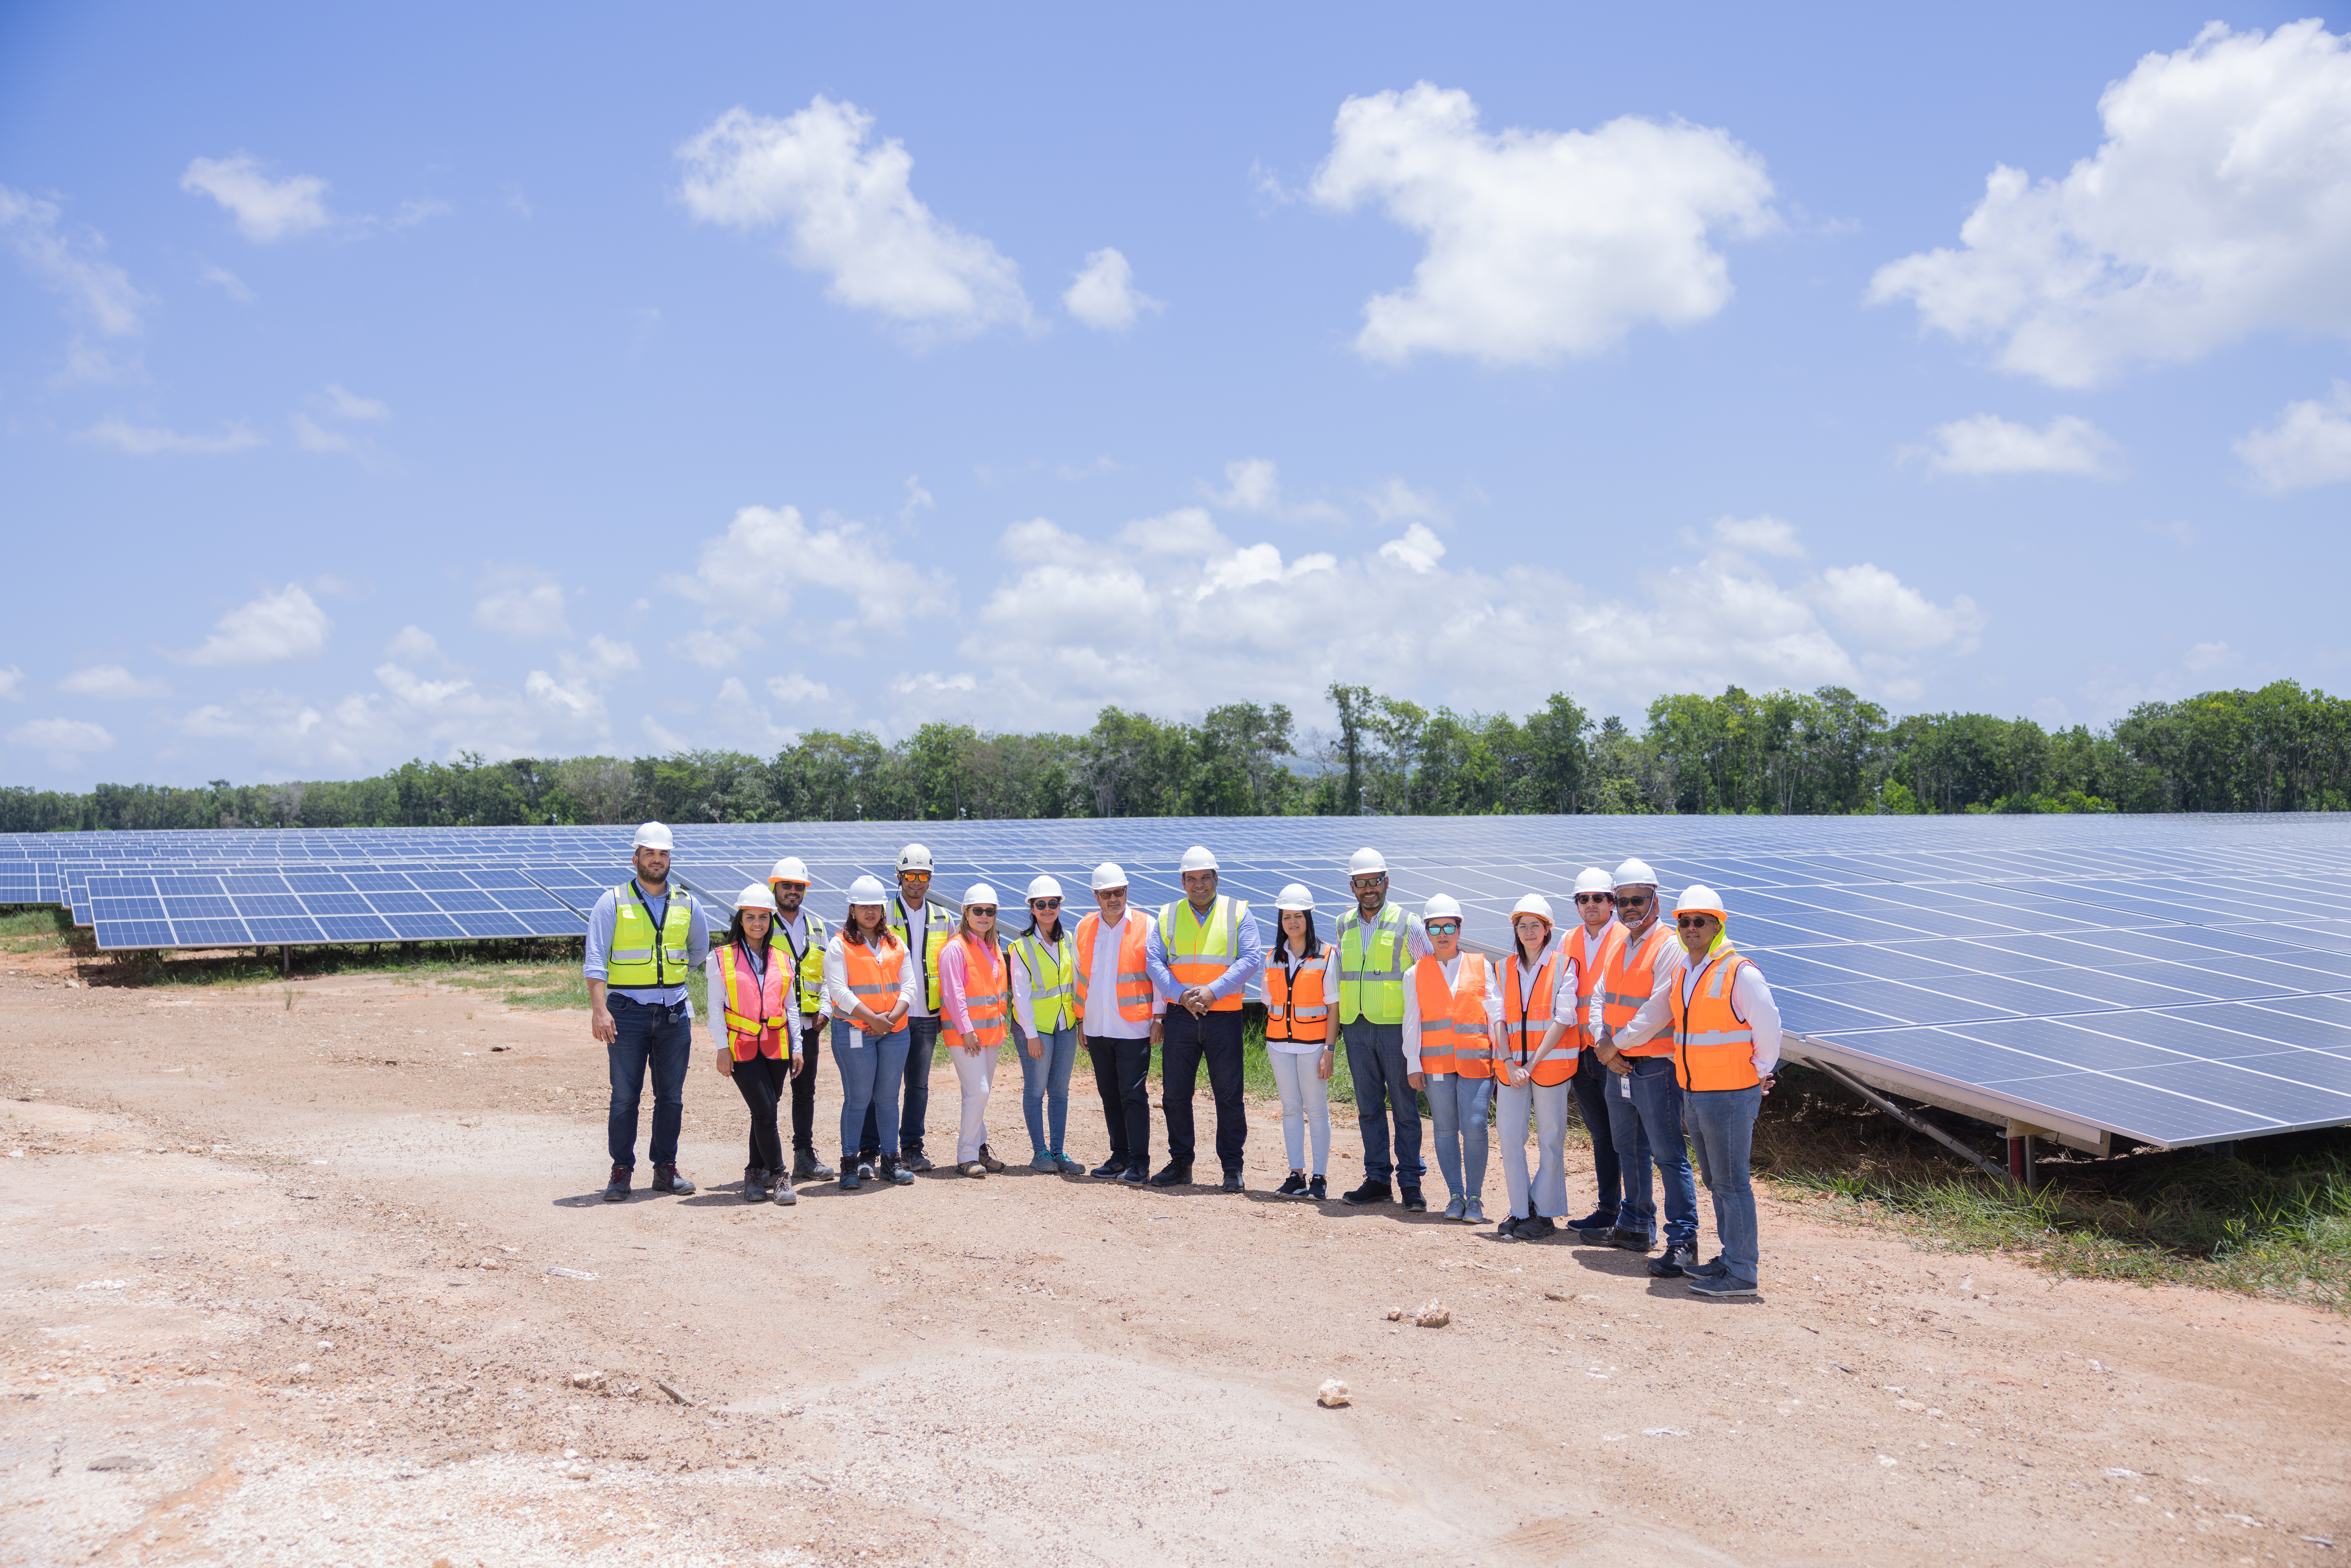 REPÚBLICA DOMINICANA: CNE supervisa avances construcción Parque Solar Fotovoltaico Matrisol que aportará 94,000 MWh al sistema energético nacional